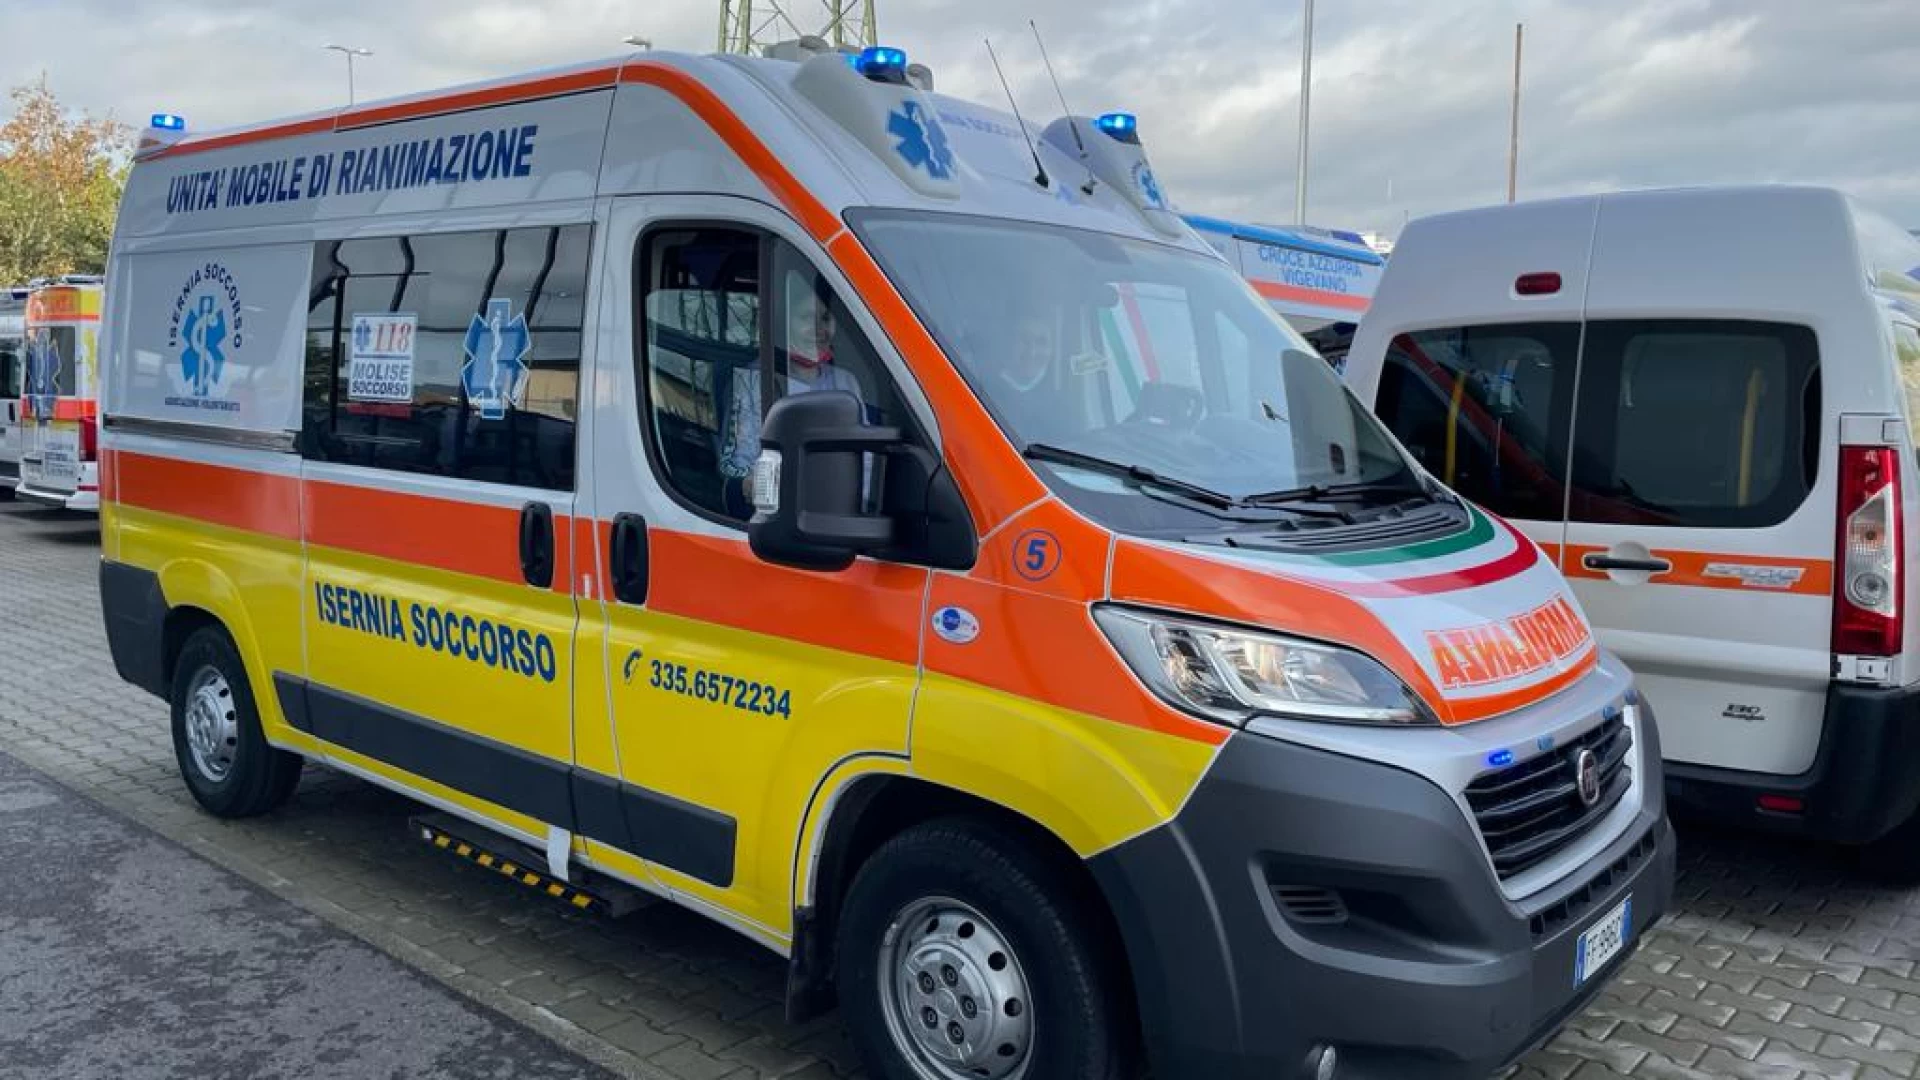 Isernia: una nuova ambulanza acquistata da “Isernia Soccorso” per sostituire quella dell’incidente del dicembre 2019.